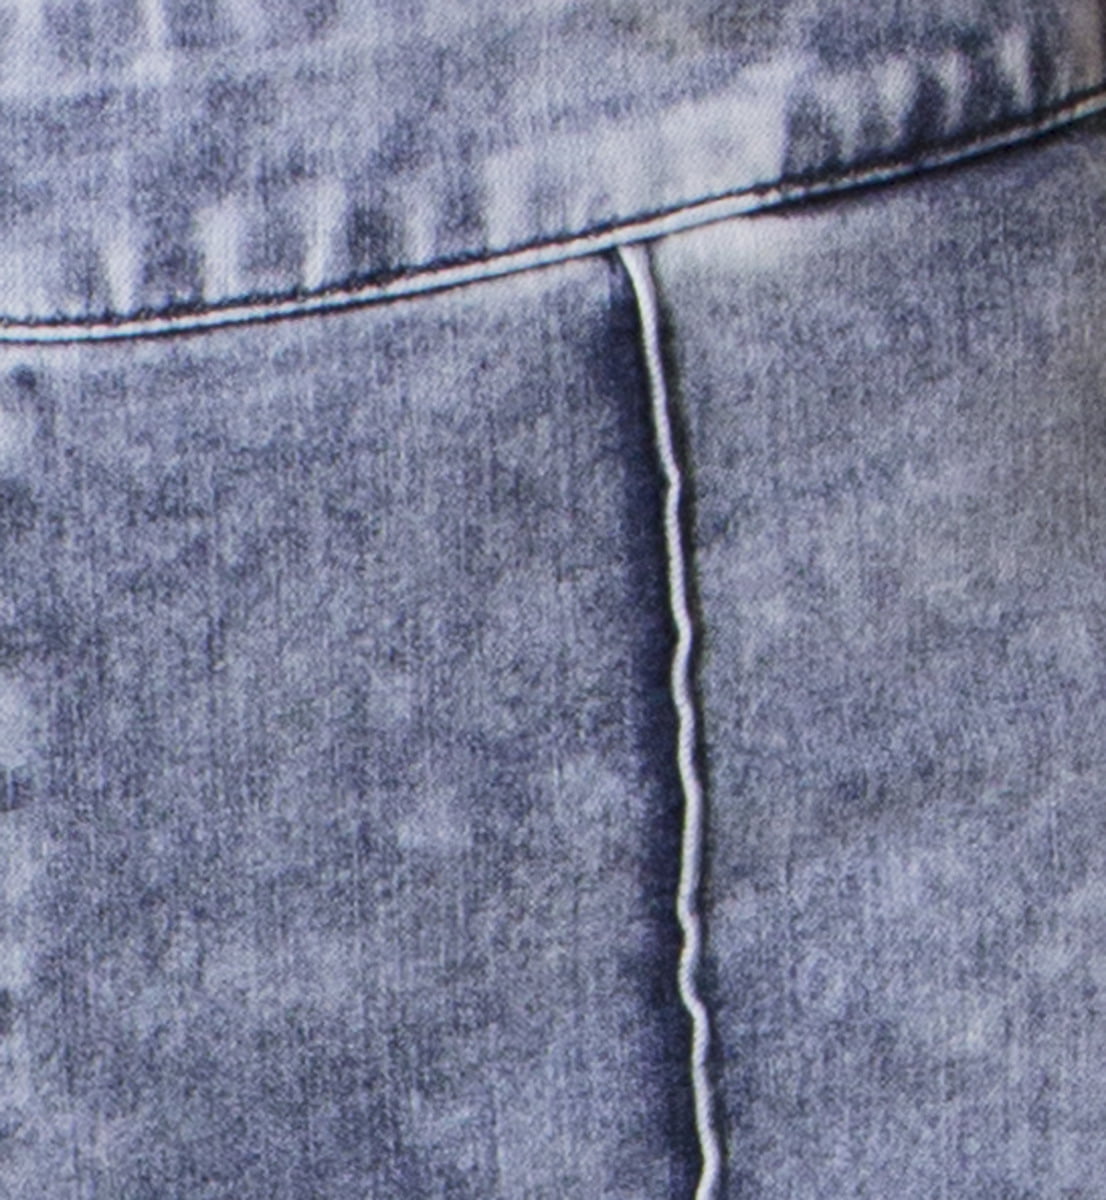 Jeans donna skinny a vita alta modellanti e push-up lavaggio medio chiaro con ghette